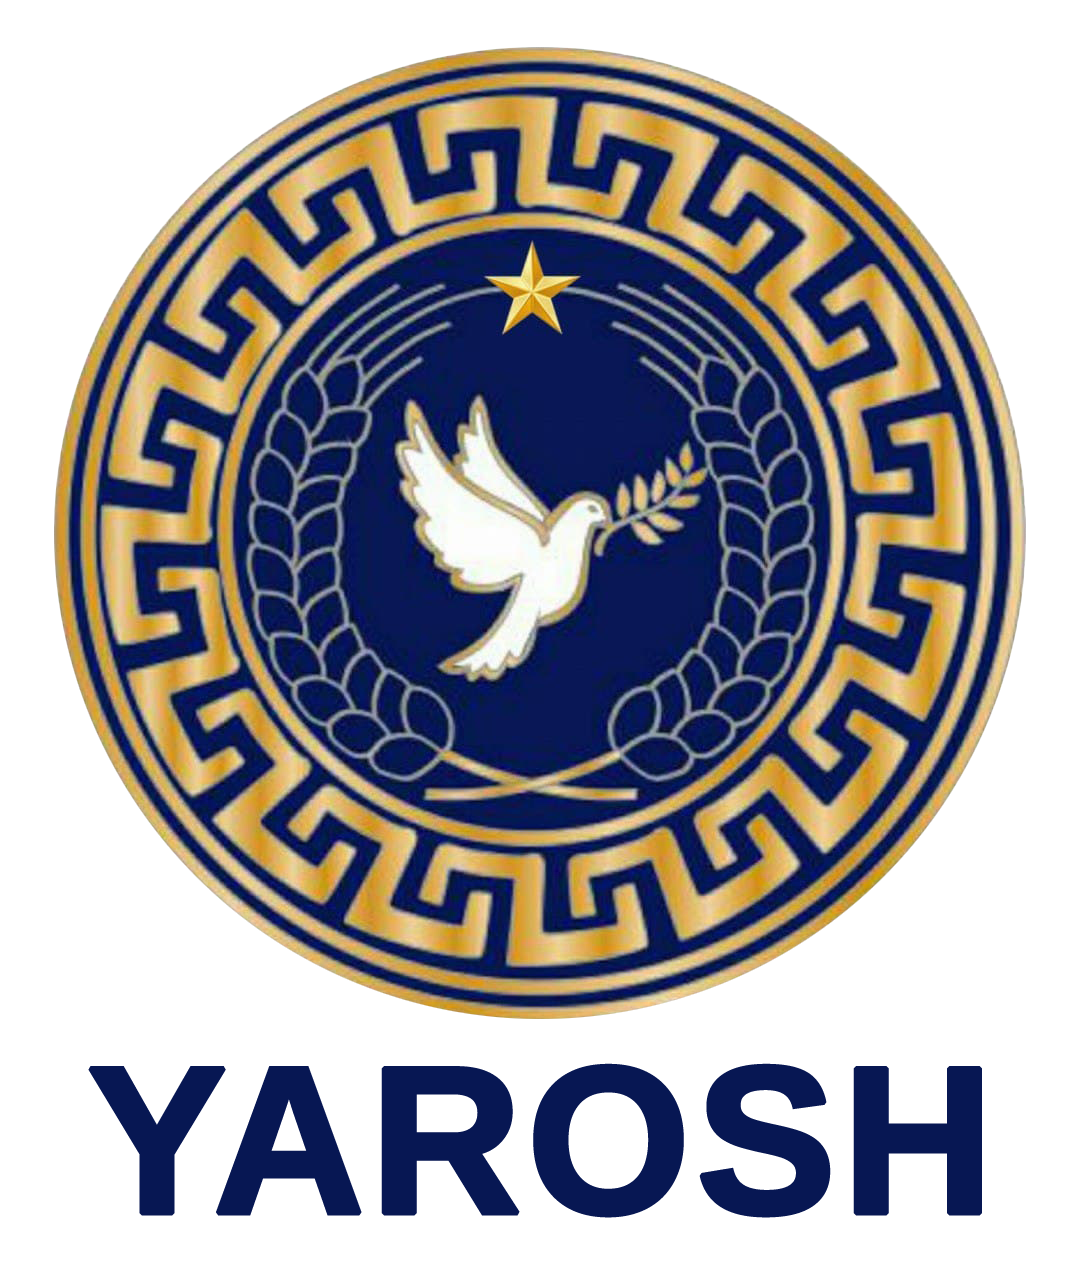 YAROSH